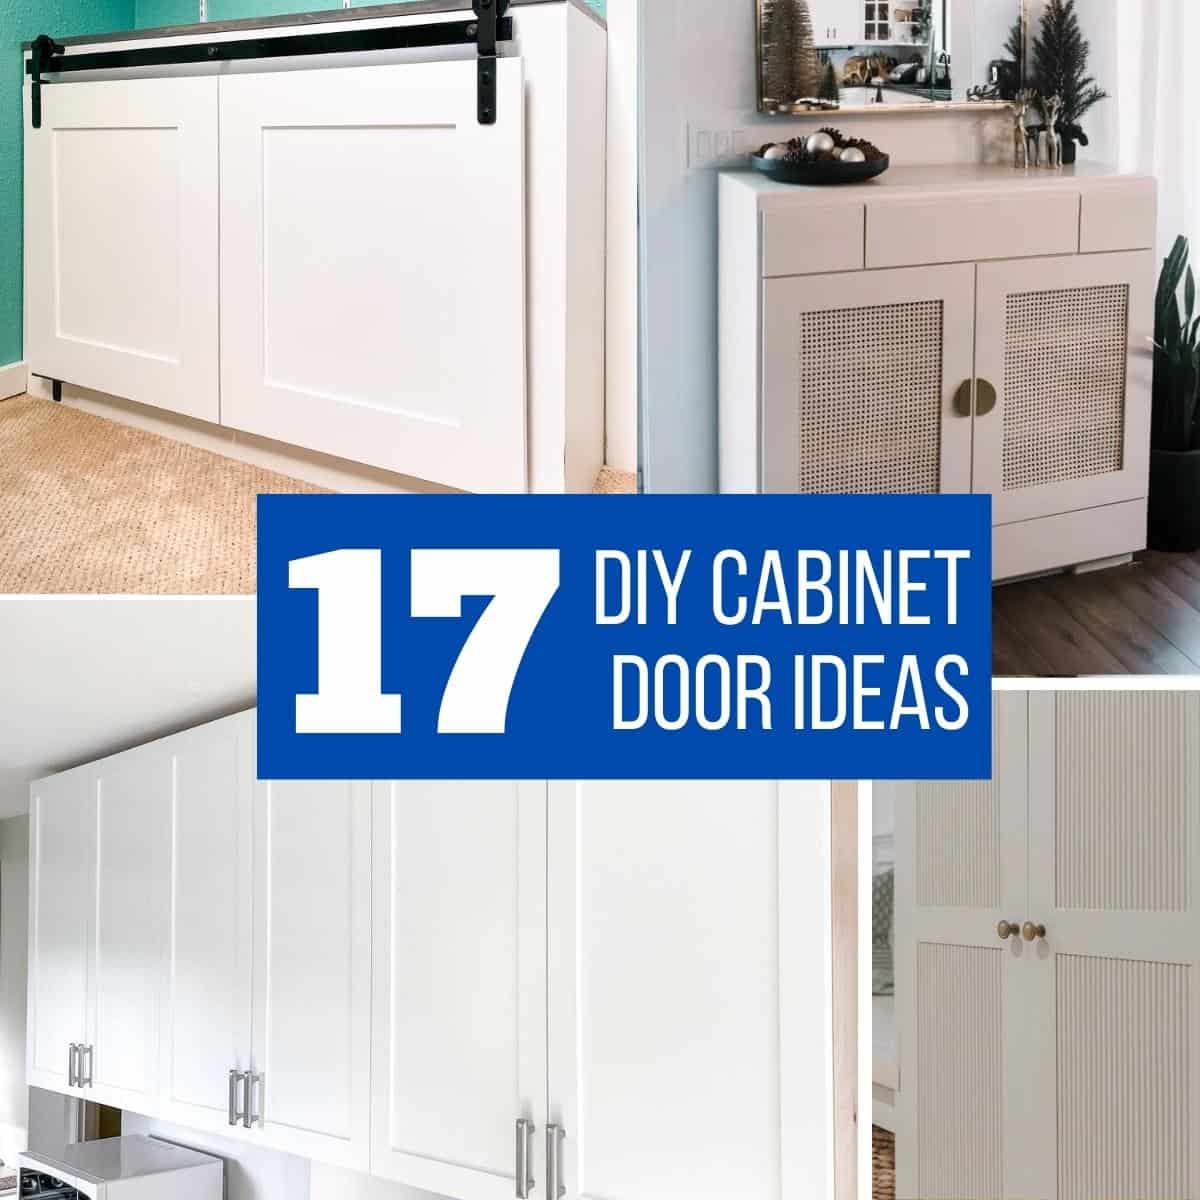 Replacement Cupboard Doors, Cabinet Doors, Kitchen or Bathroom Doors. Pine  Doors, Wood Doors, Replacement Doors, Woodcraft, Artisan Doors. 